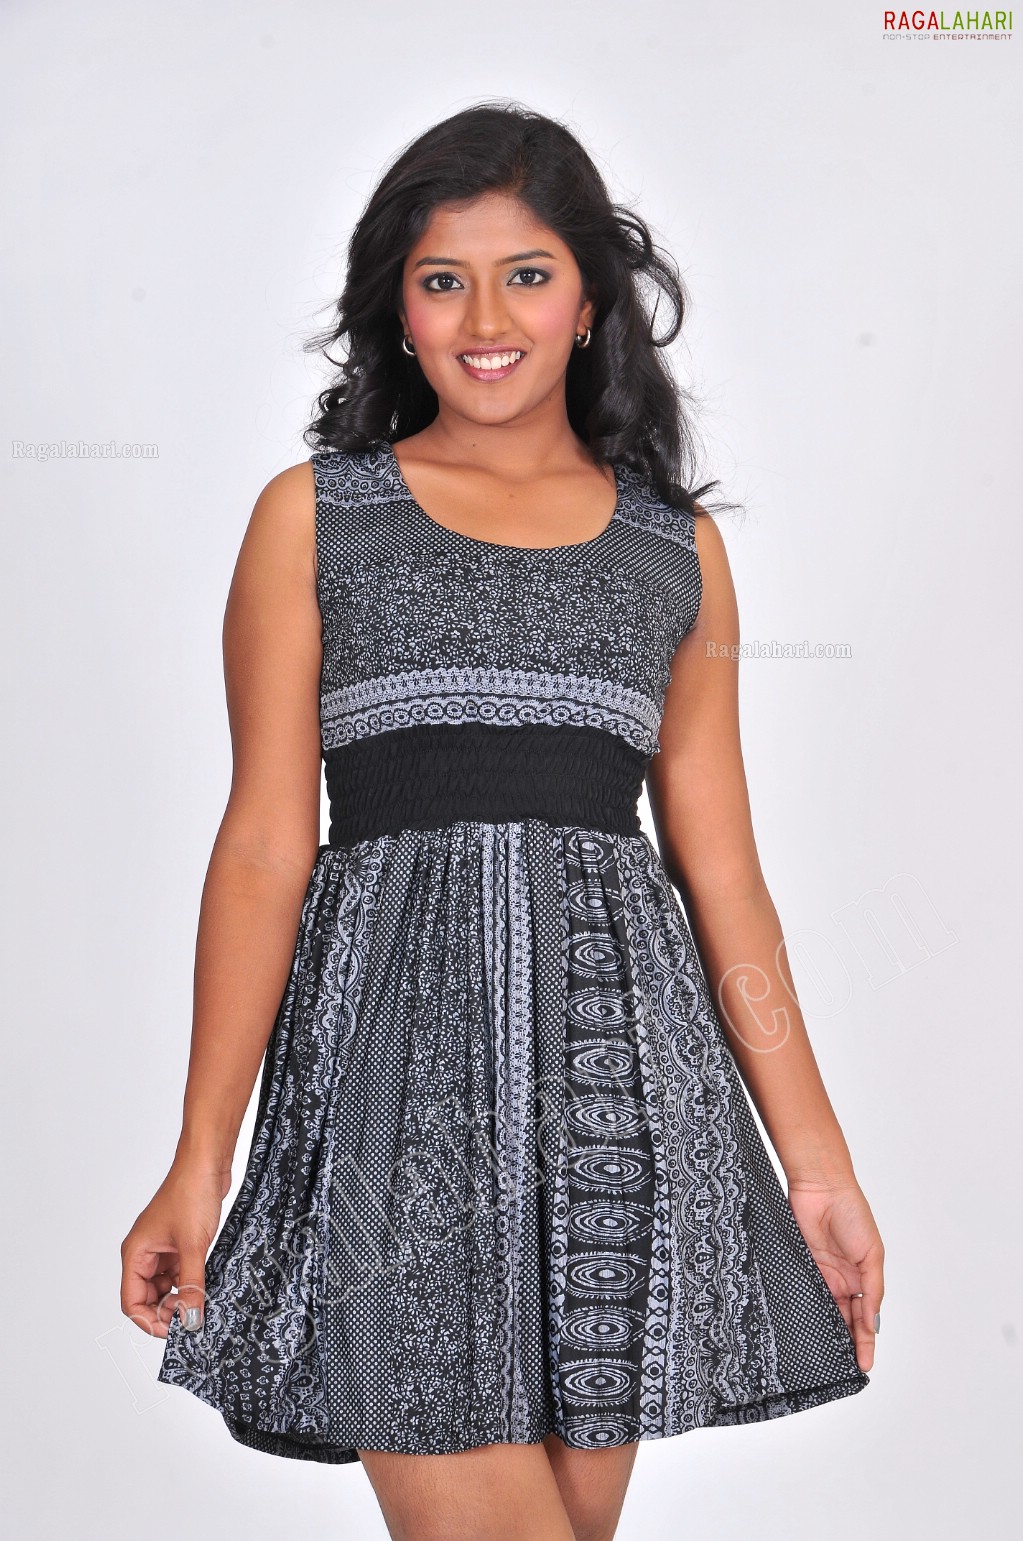 Eesha Rebba in Dark Gray Short Dress Exclusive Photo Shoot